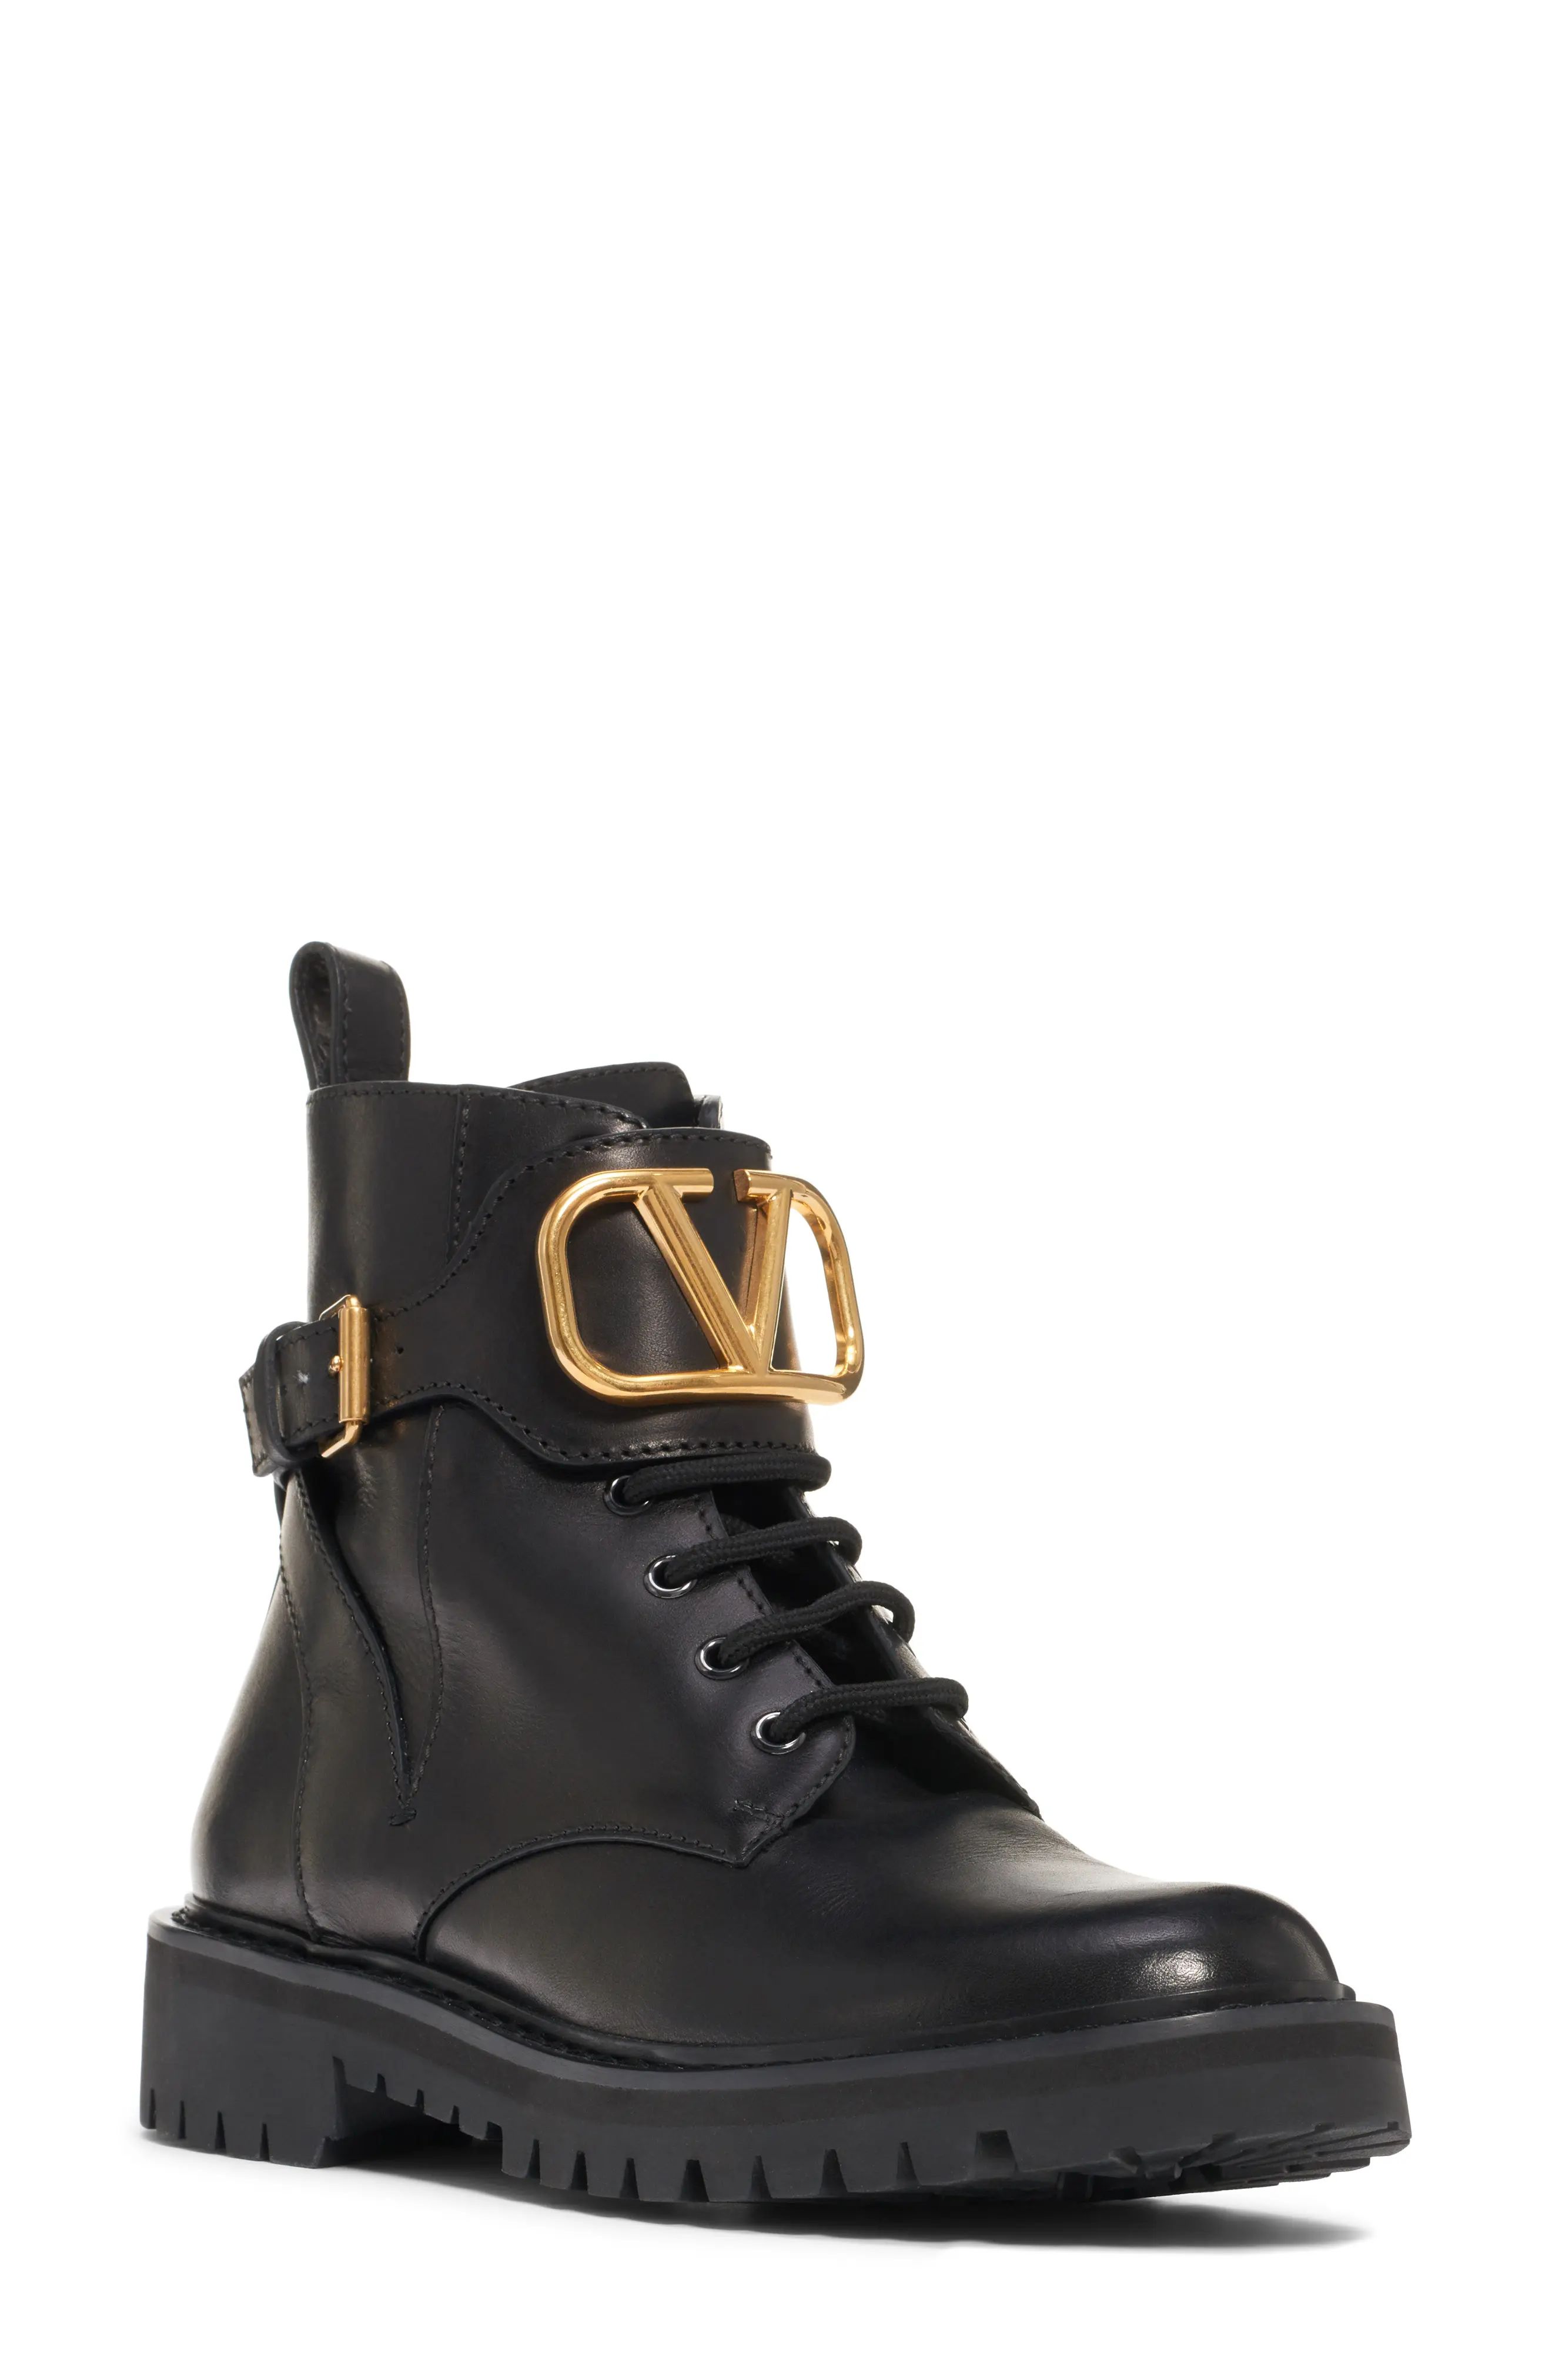 Valentino Garavani V-Logo Buckle Combat Boot, Size 5.5Us in Black at Nordstrom | Nordstrom